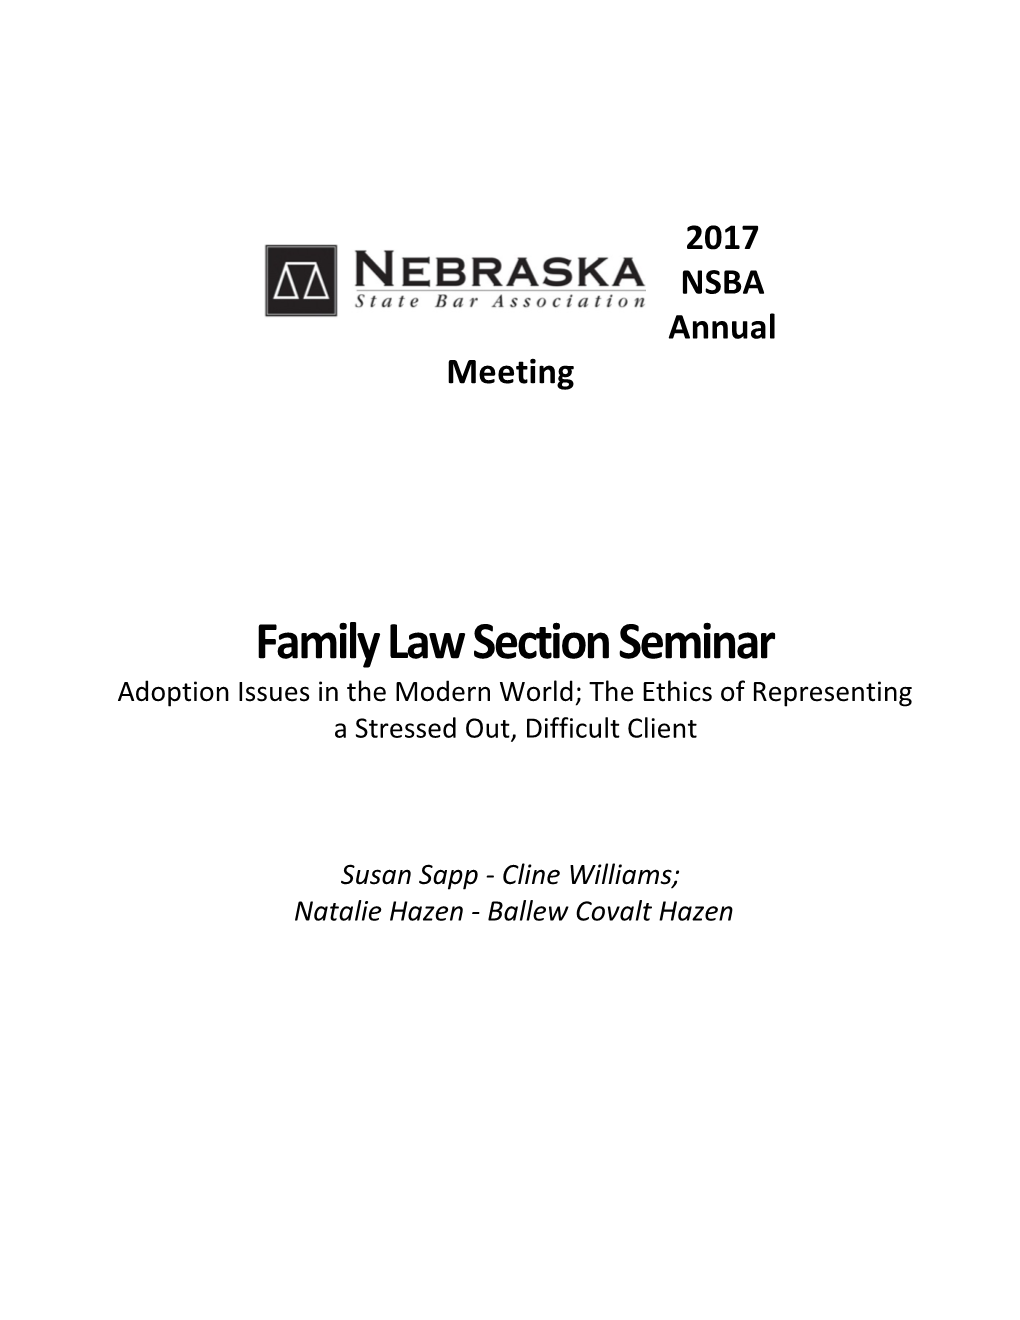 Understanding Adoption Procedures in Nebraska - Manual (1303198)